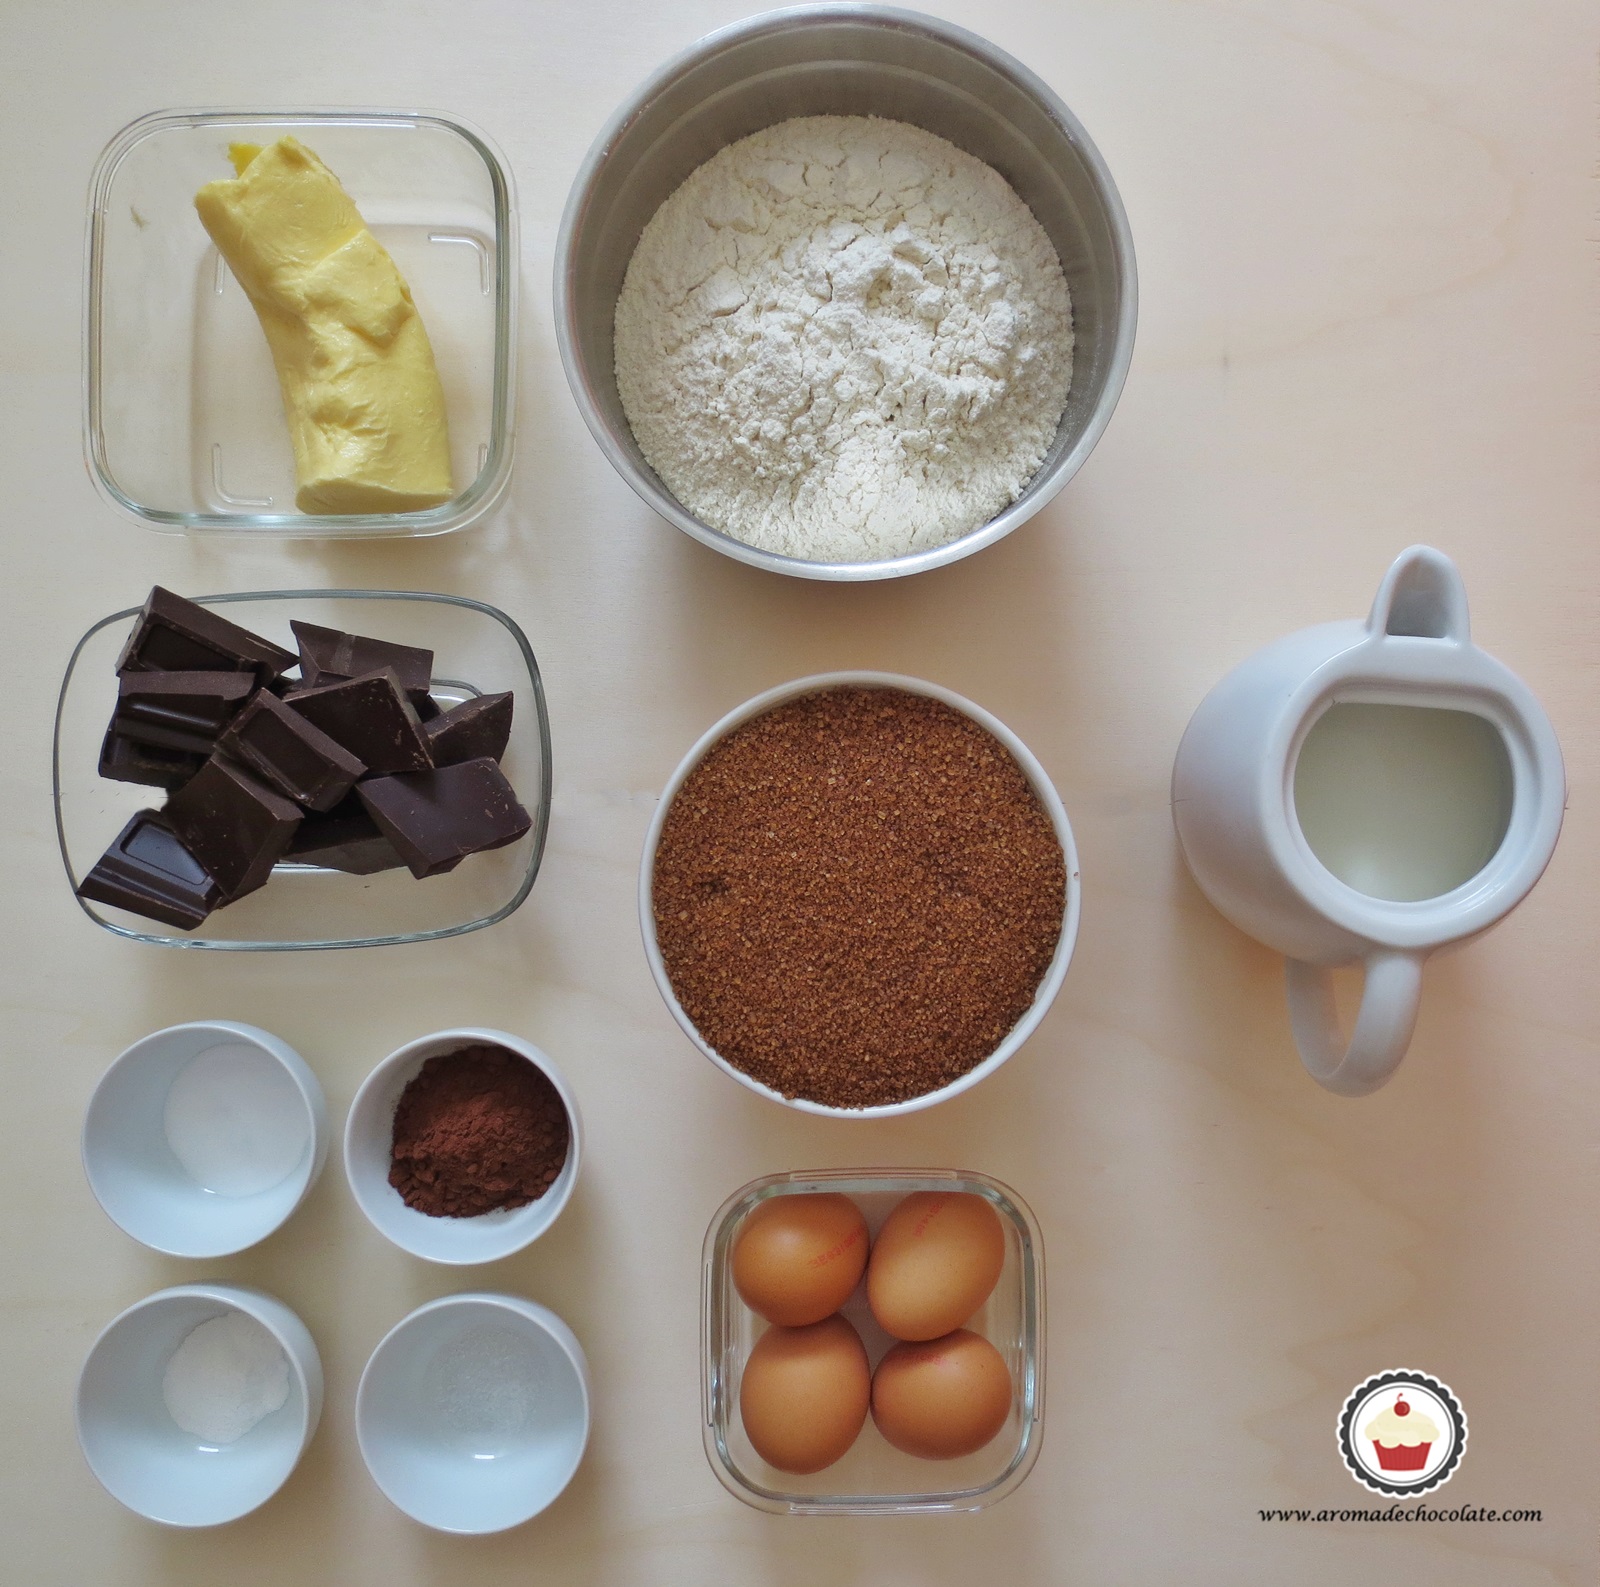 PASTEL DE CHOCOLATE - Aroma de chocolate